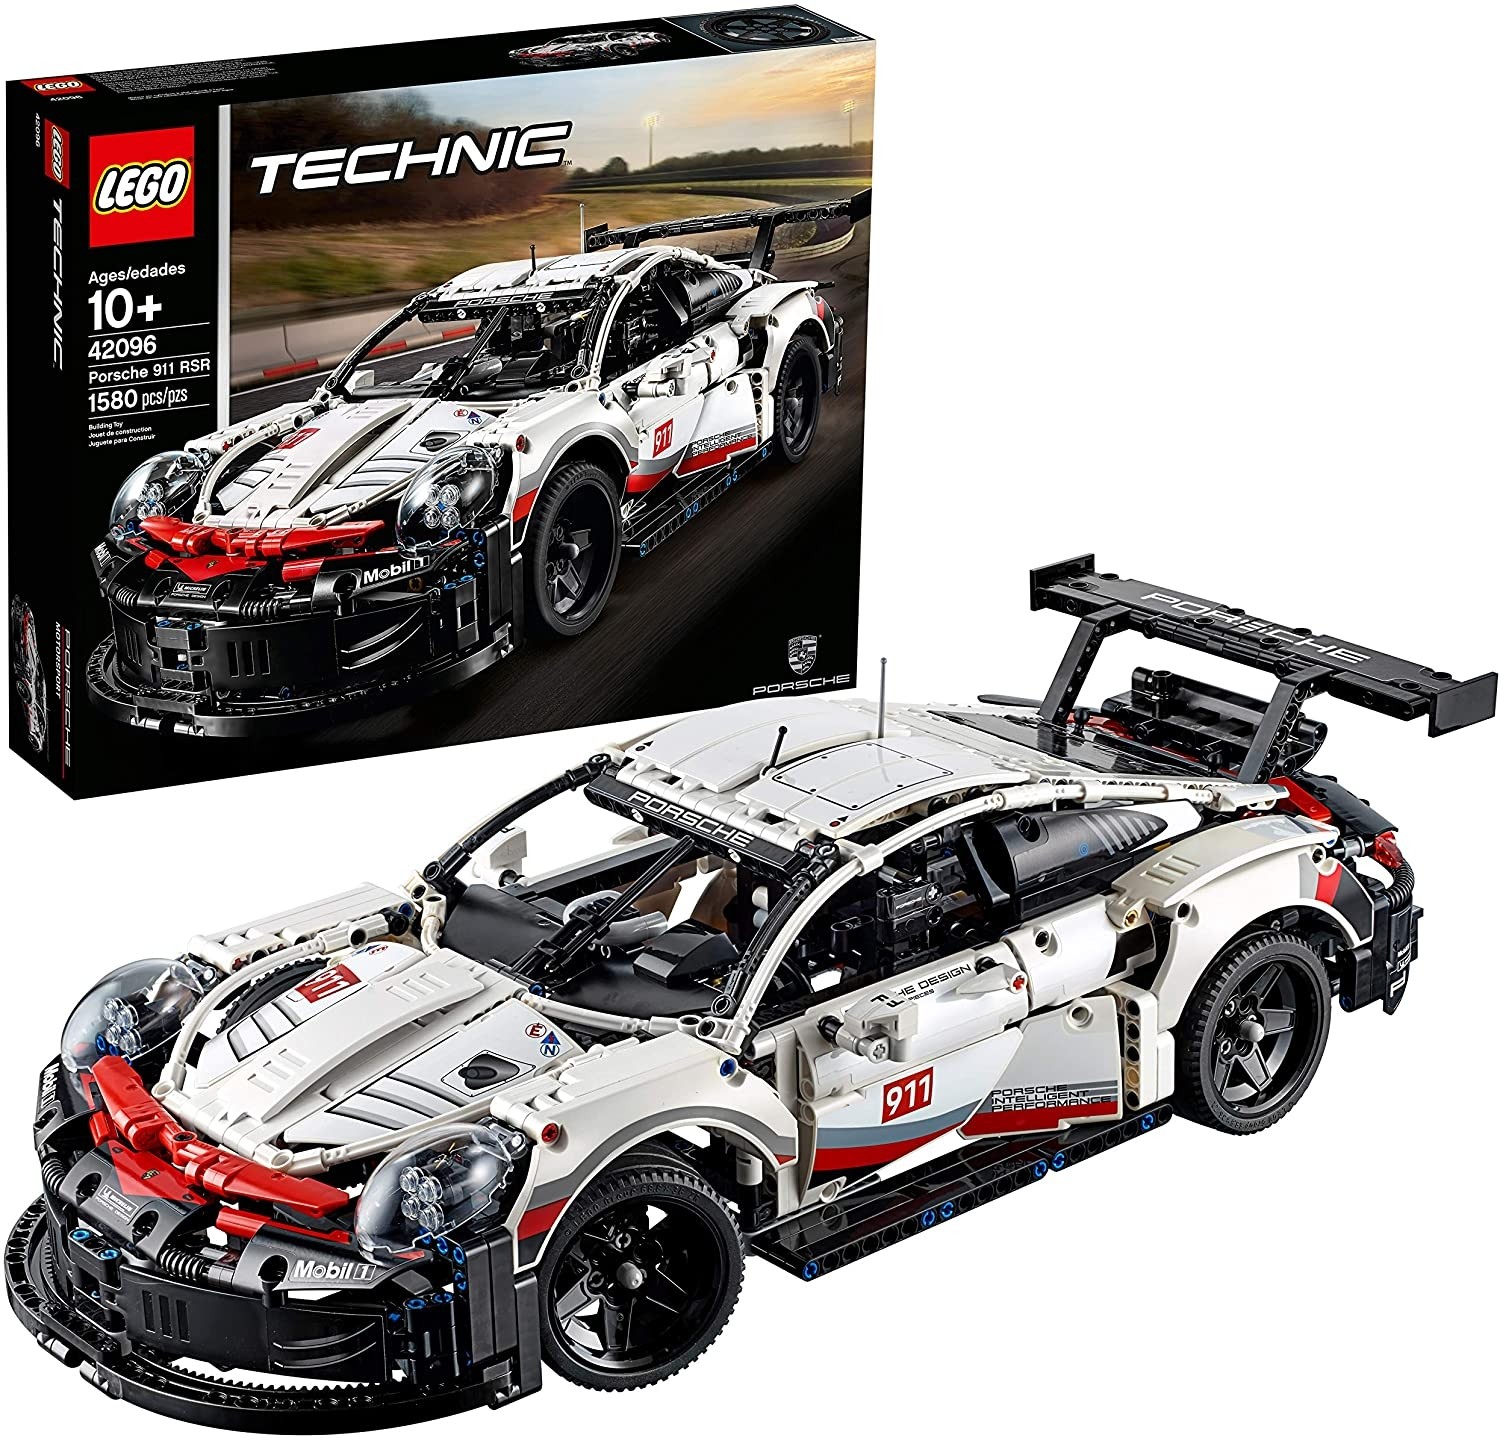 Lego Technic: Porsche 911 RSR 42096